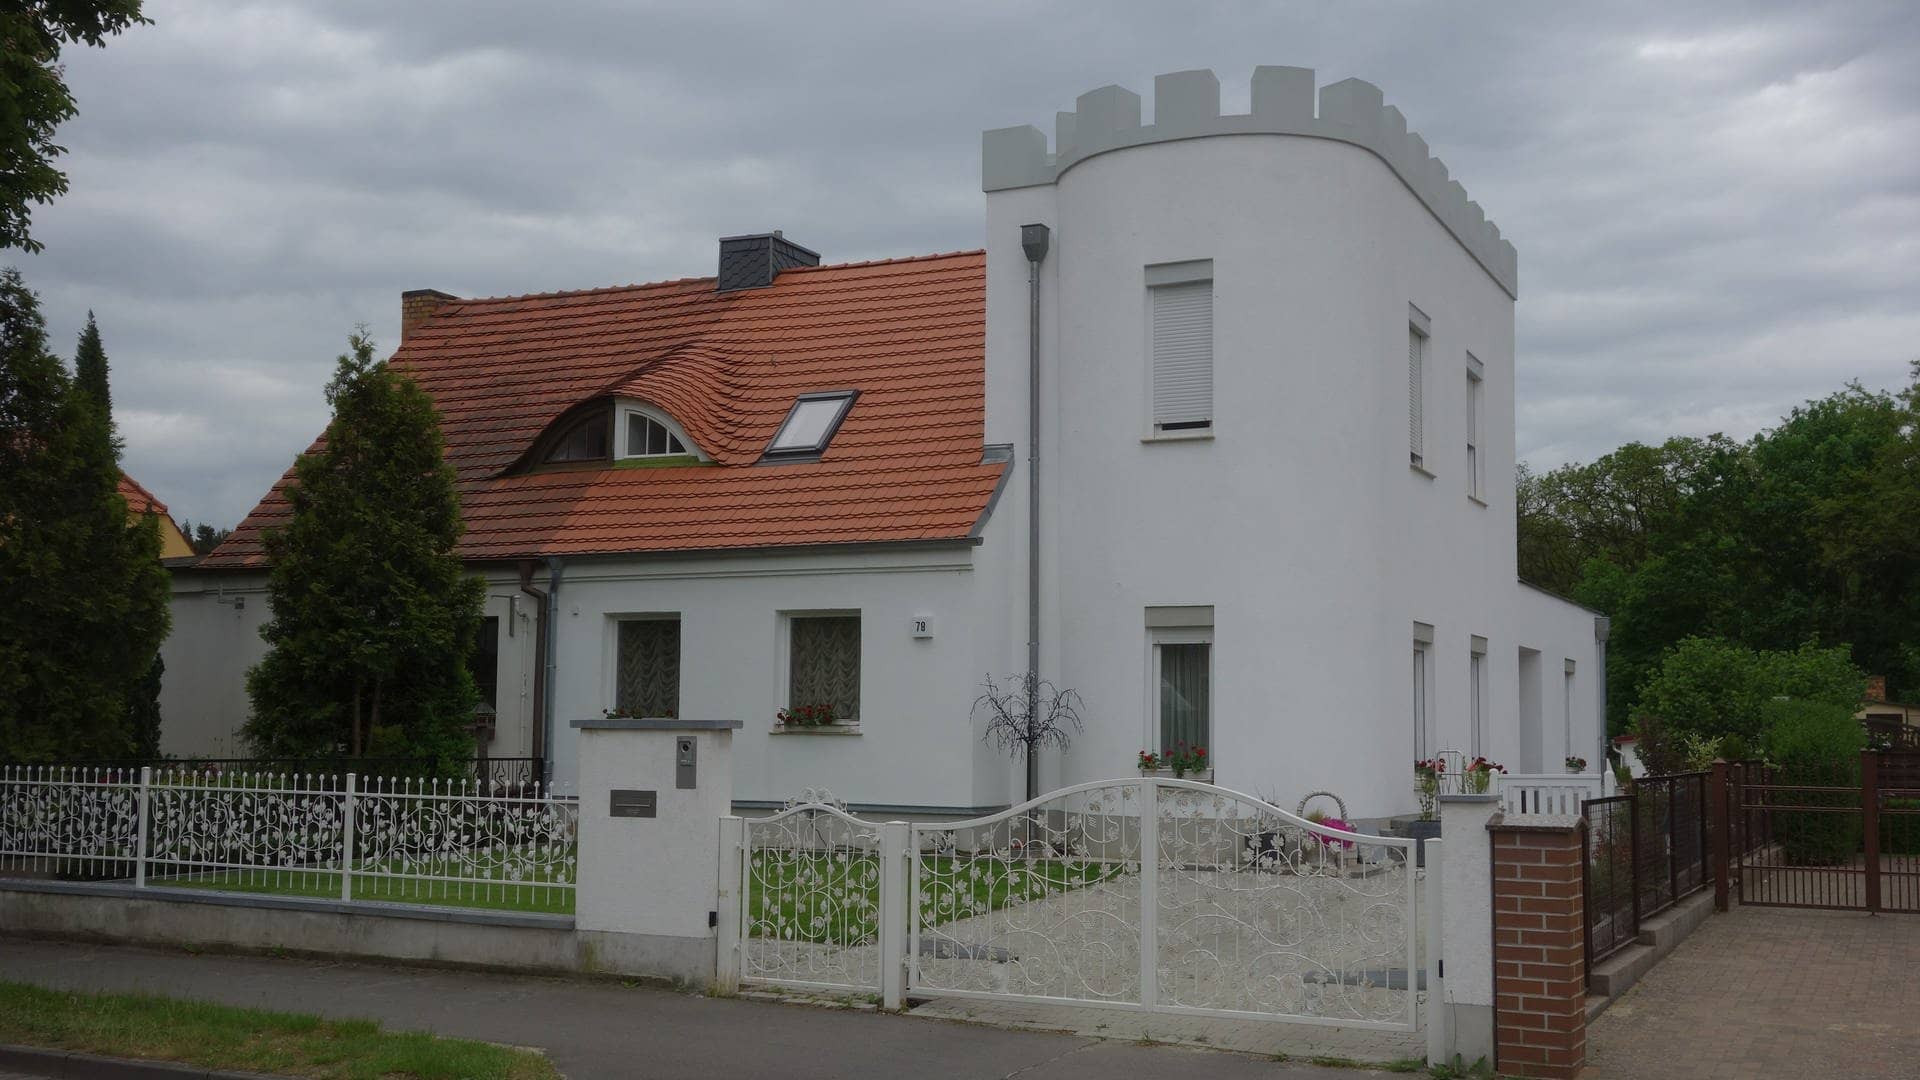 Ein Haus in Bad Saarow, das einer Burg ähnelt. (Foto: Turit Fröbe)